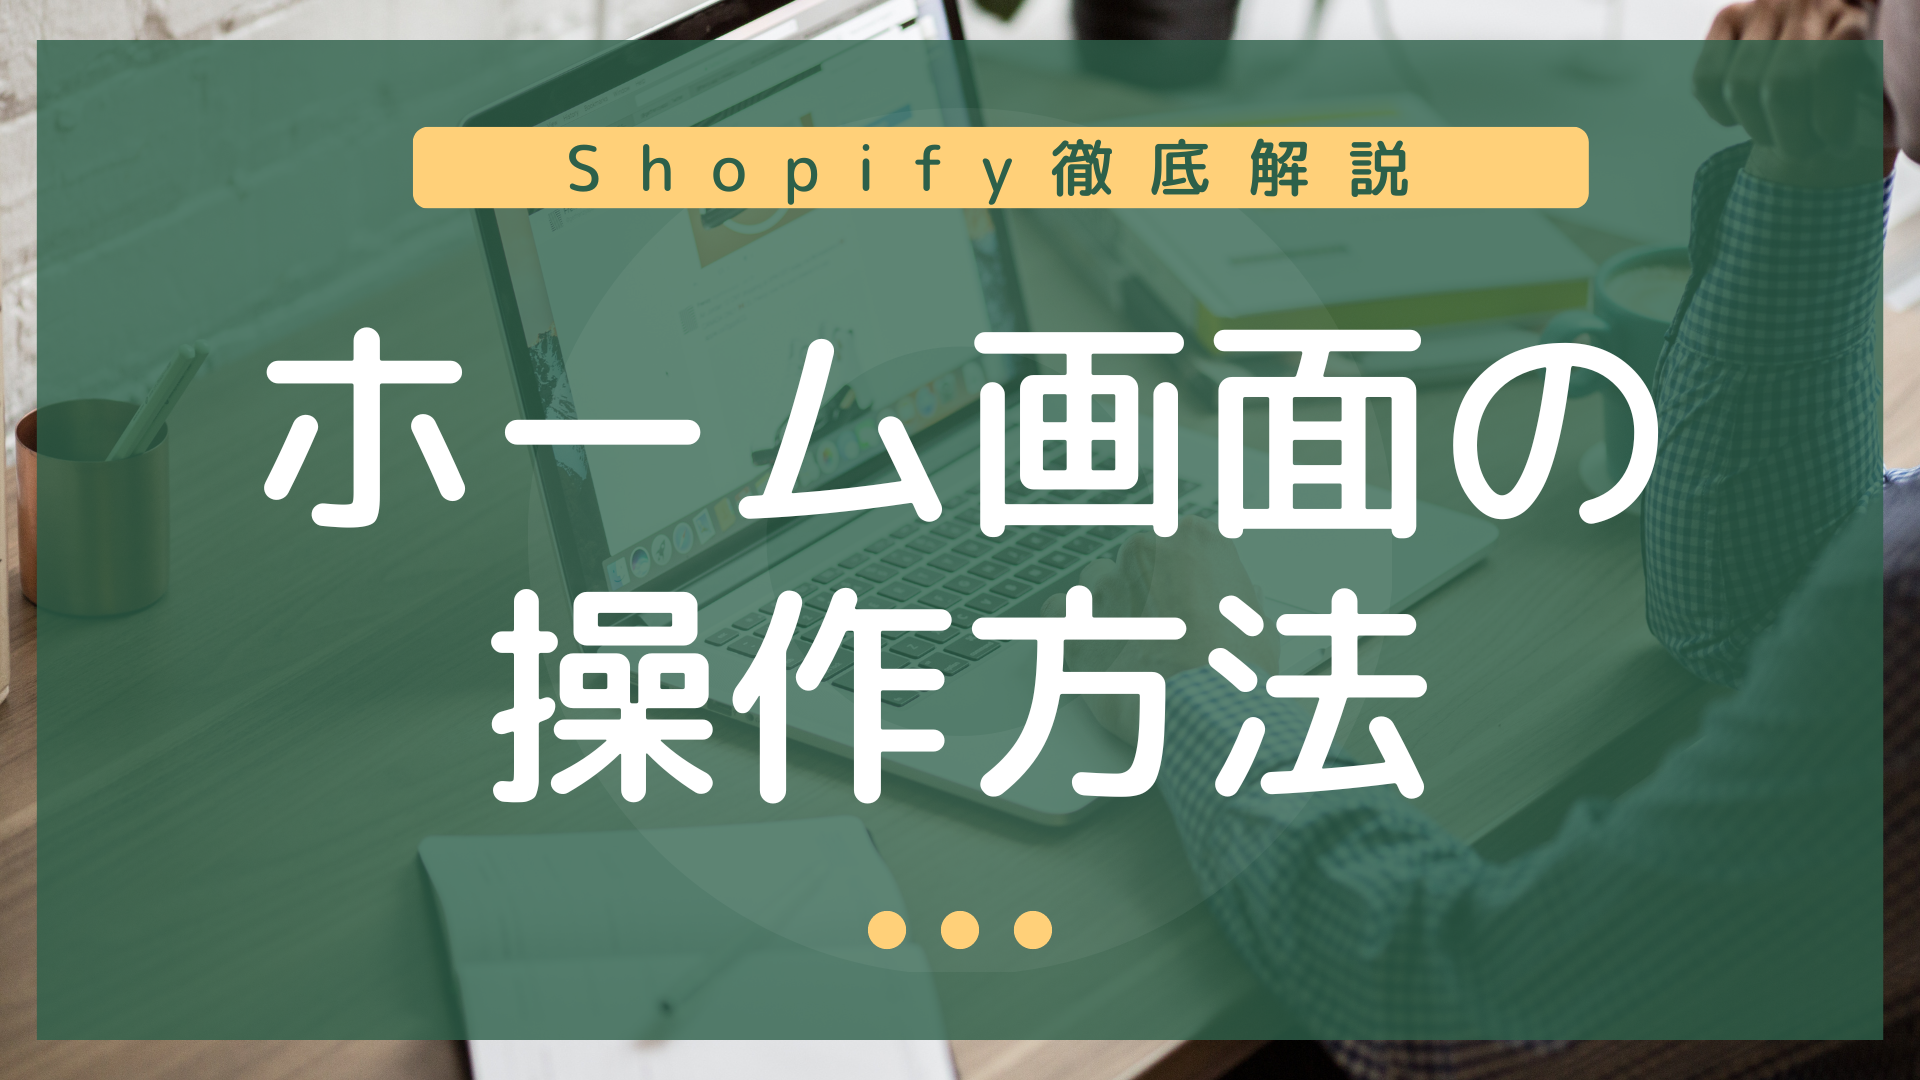 【Shopify初心者の方へ徹底解説】①ホーム画面の操作方法